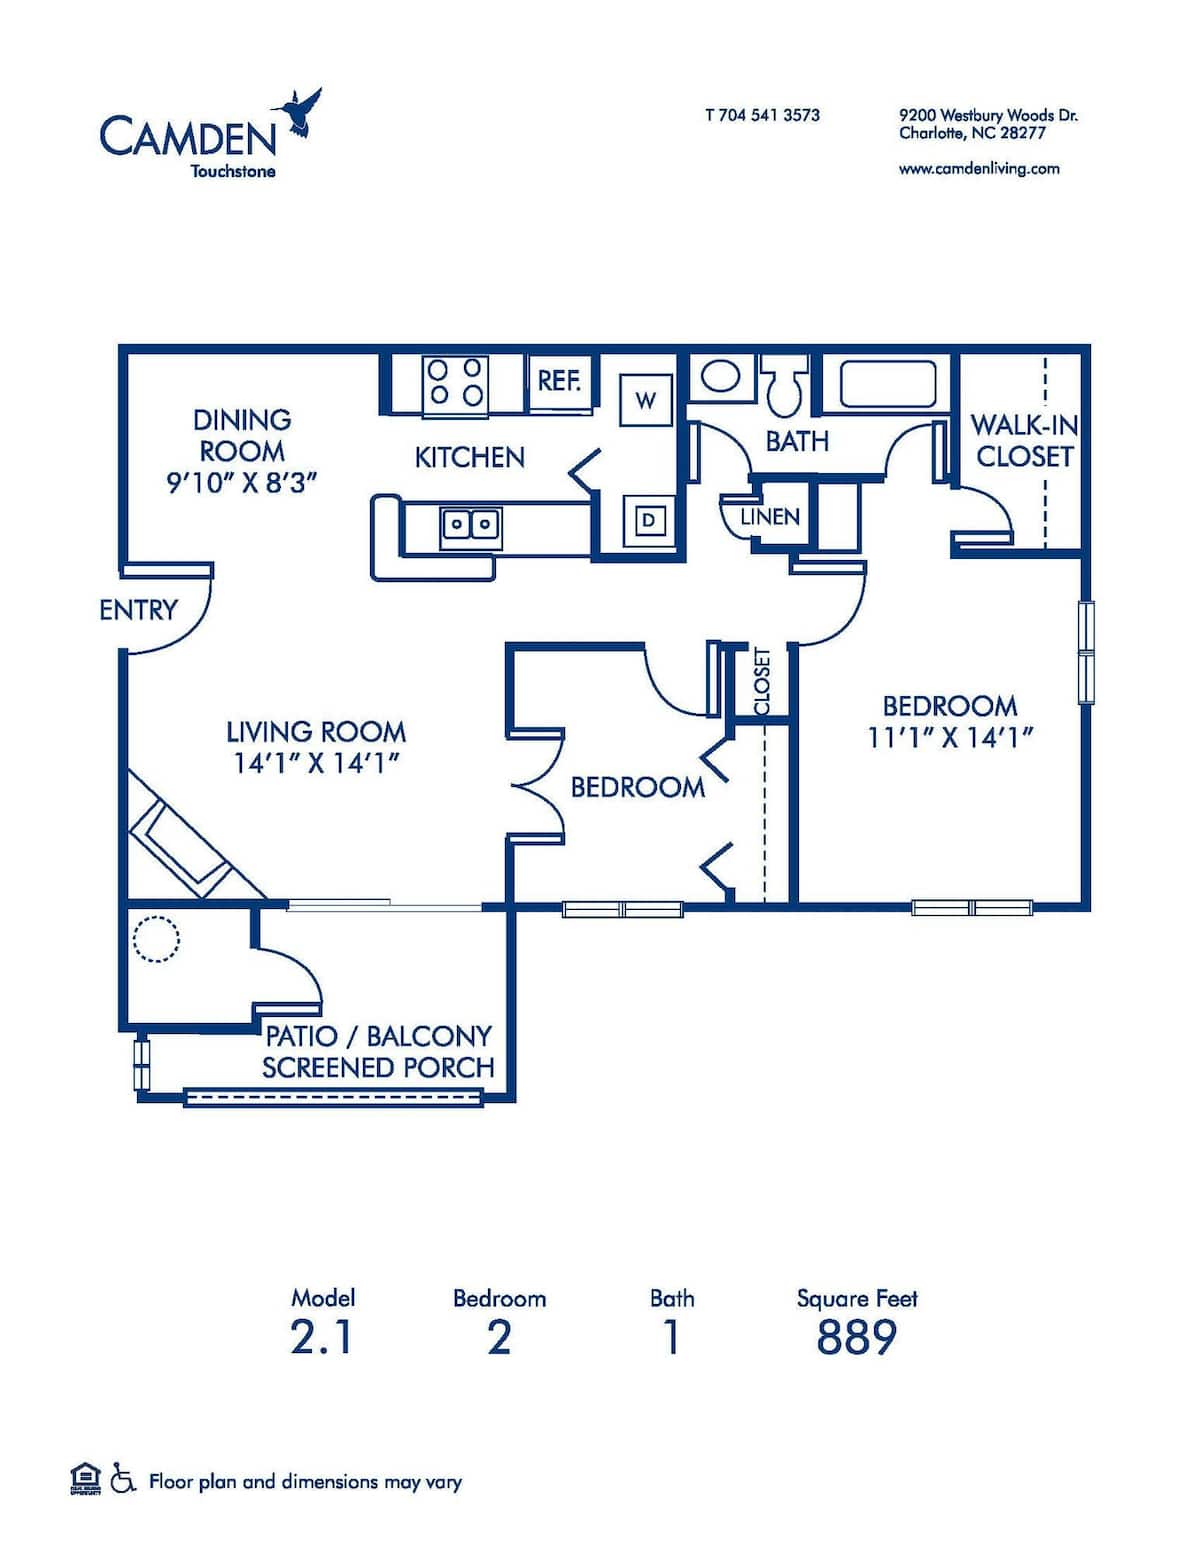 Floorplan diagram for 2.1, showing 1 bedroom